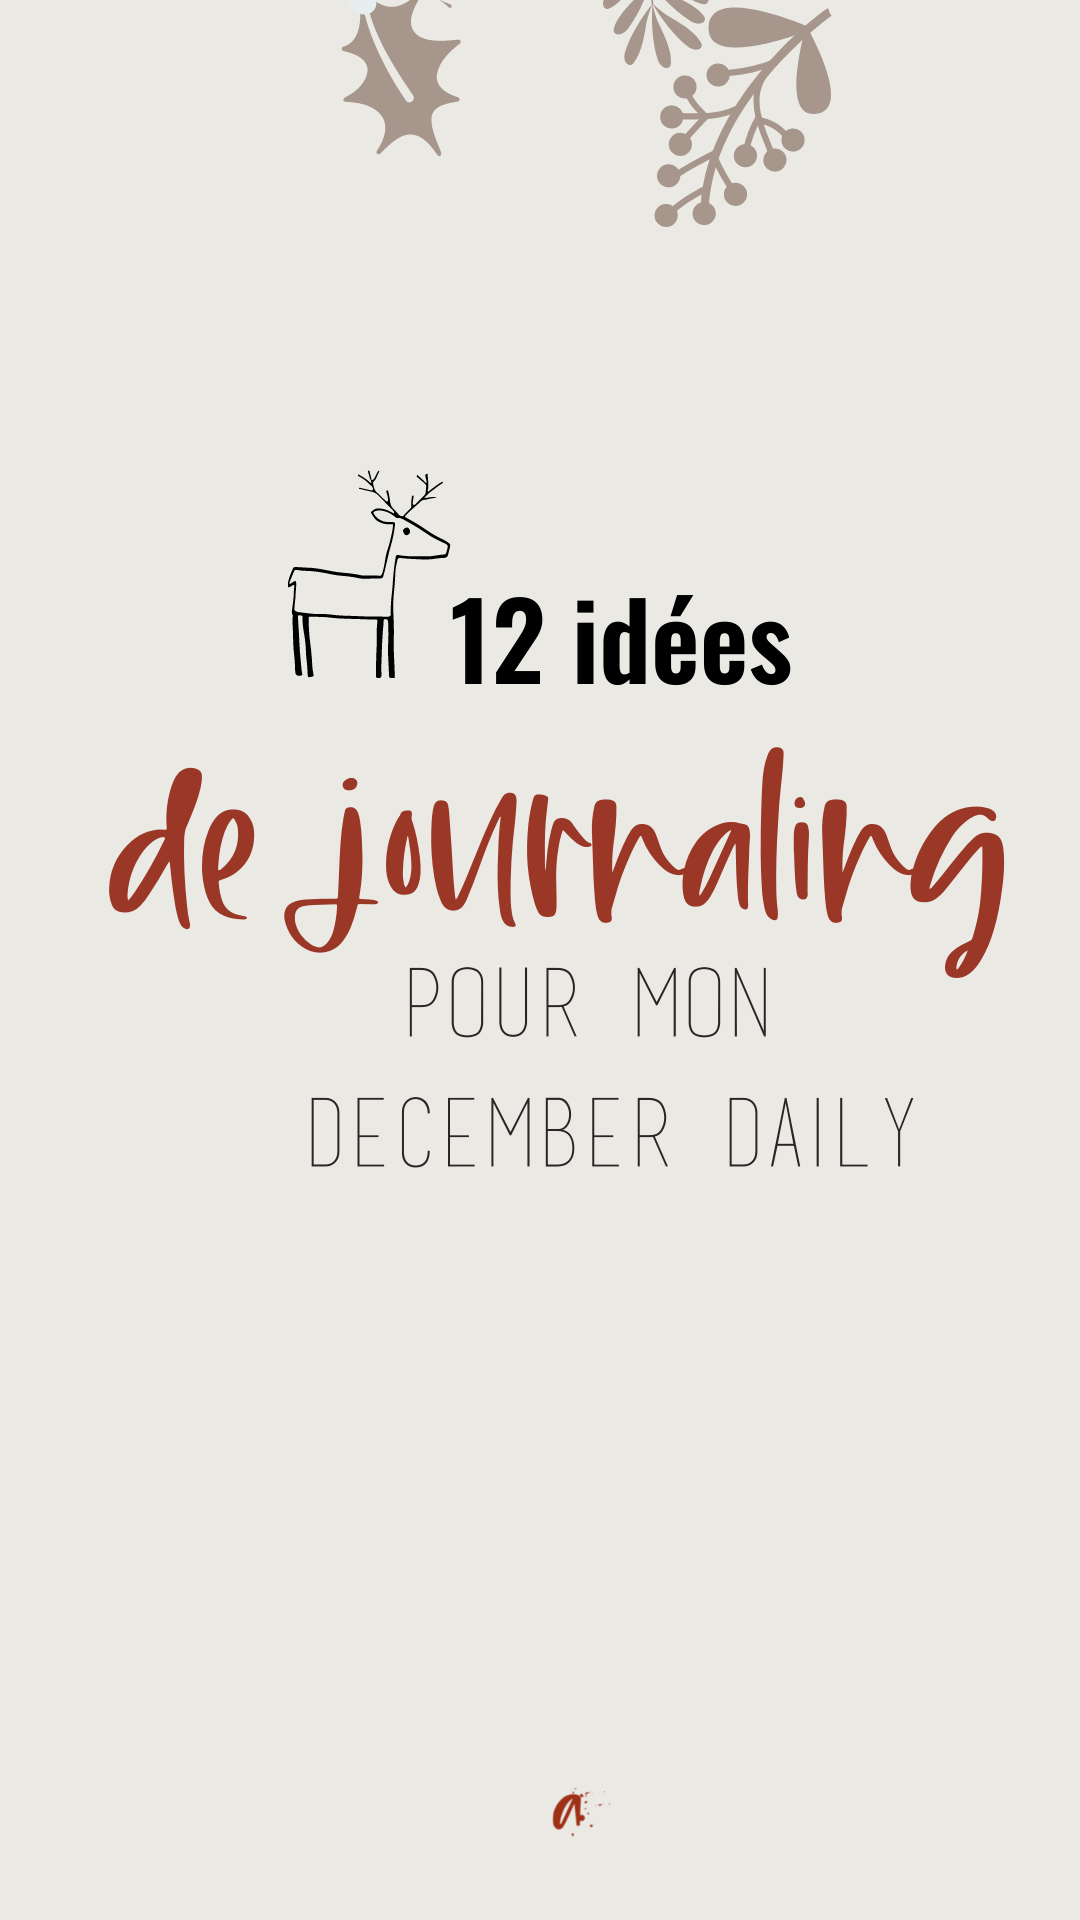 épingle pinterest 12 idées de journaling pour mon december daily